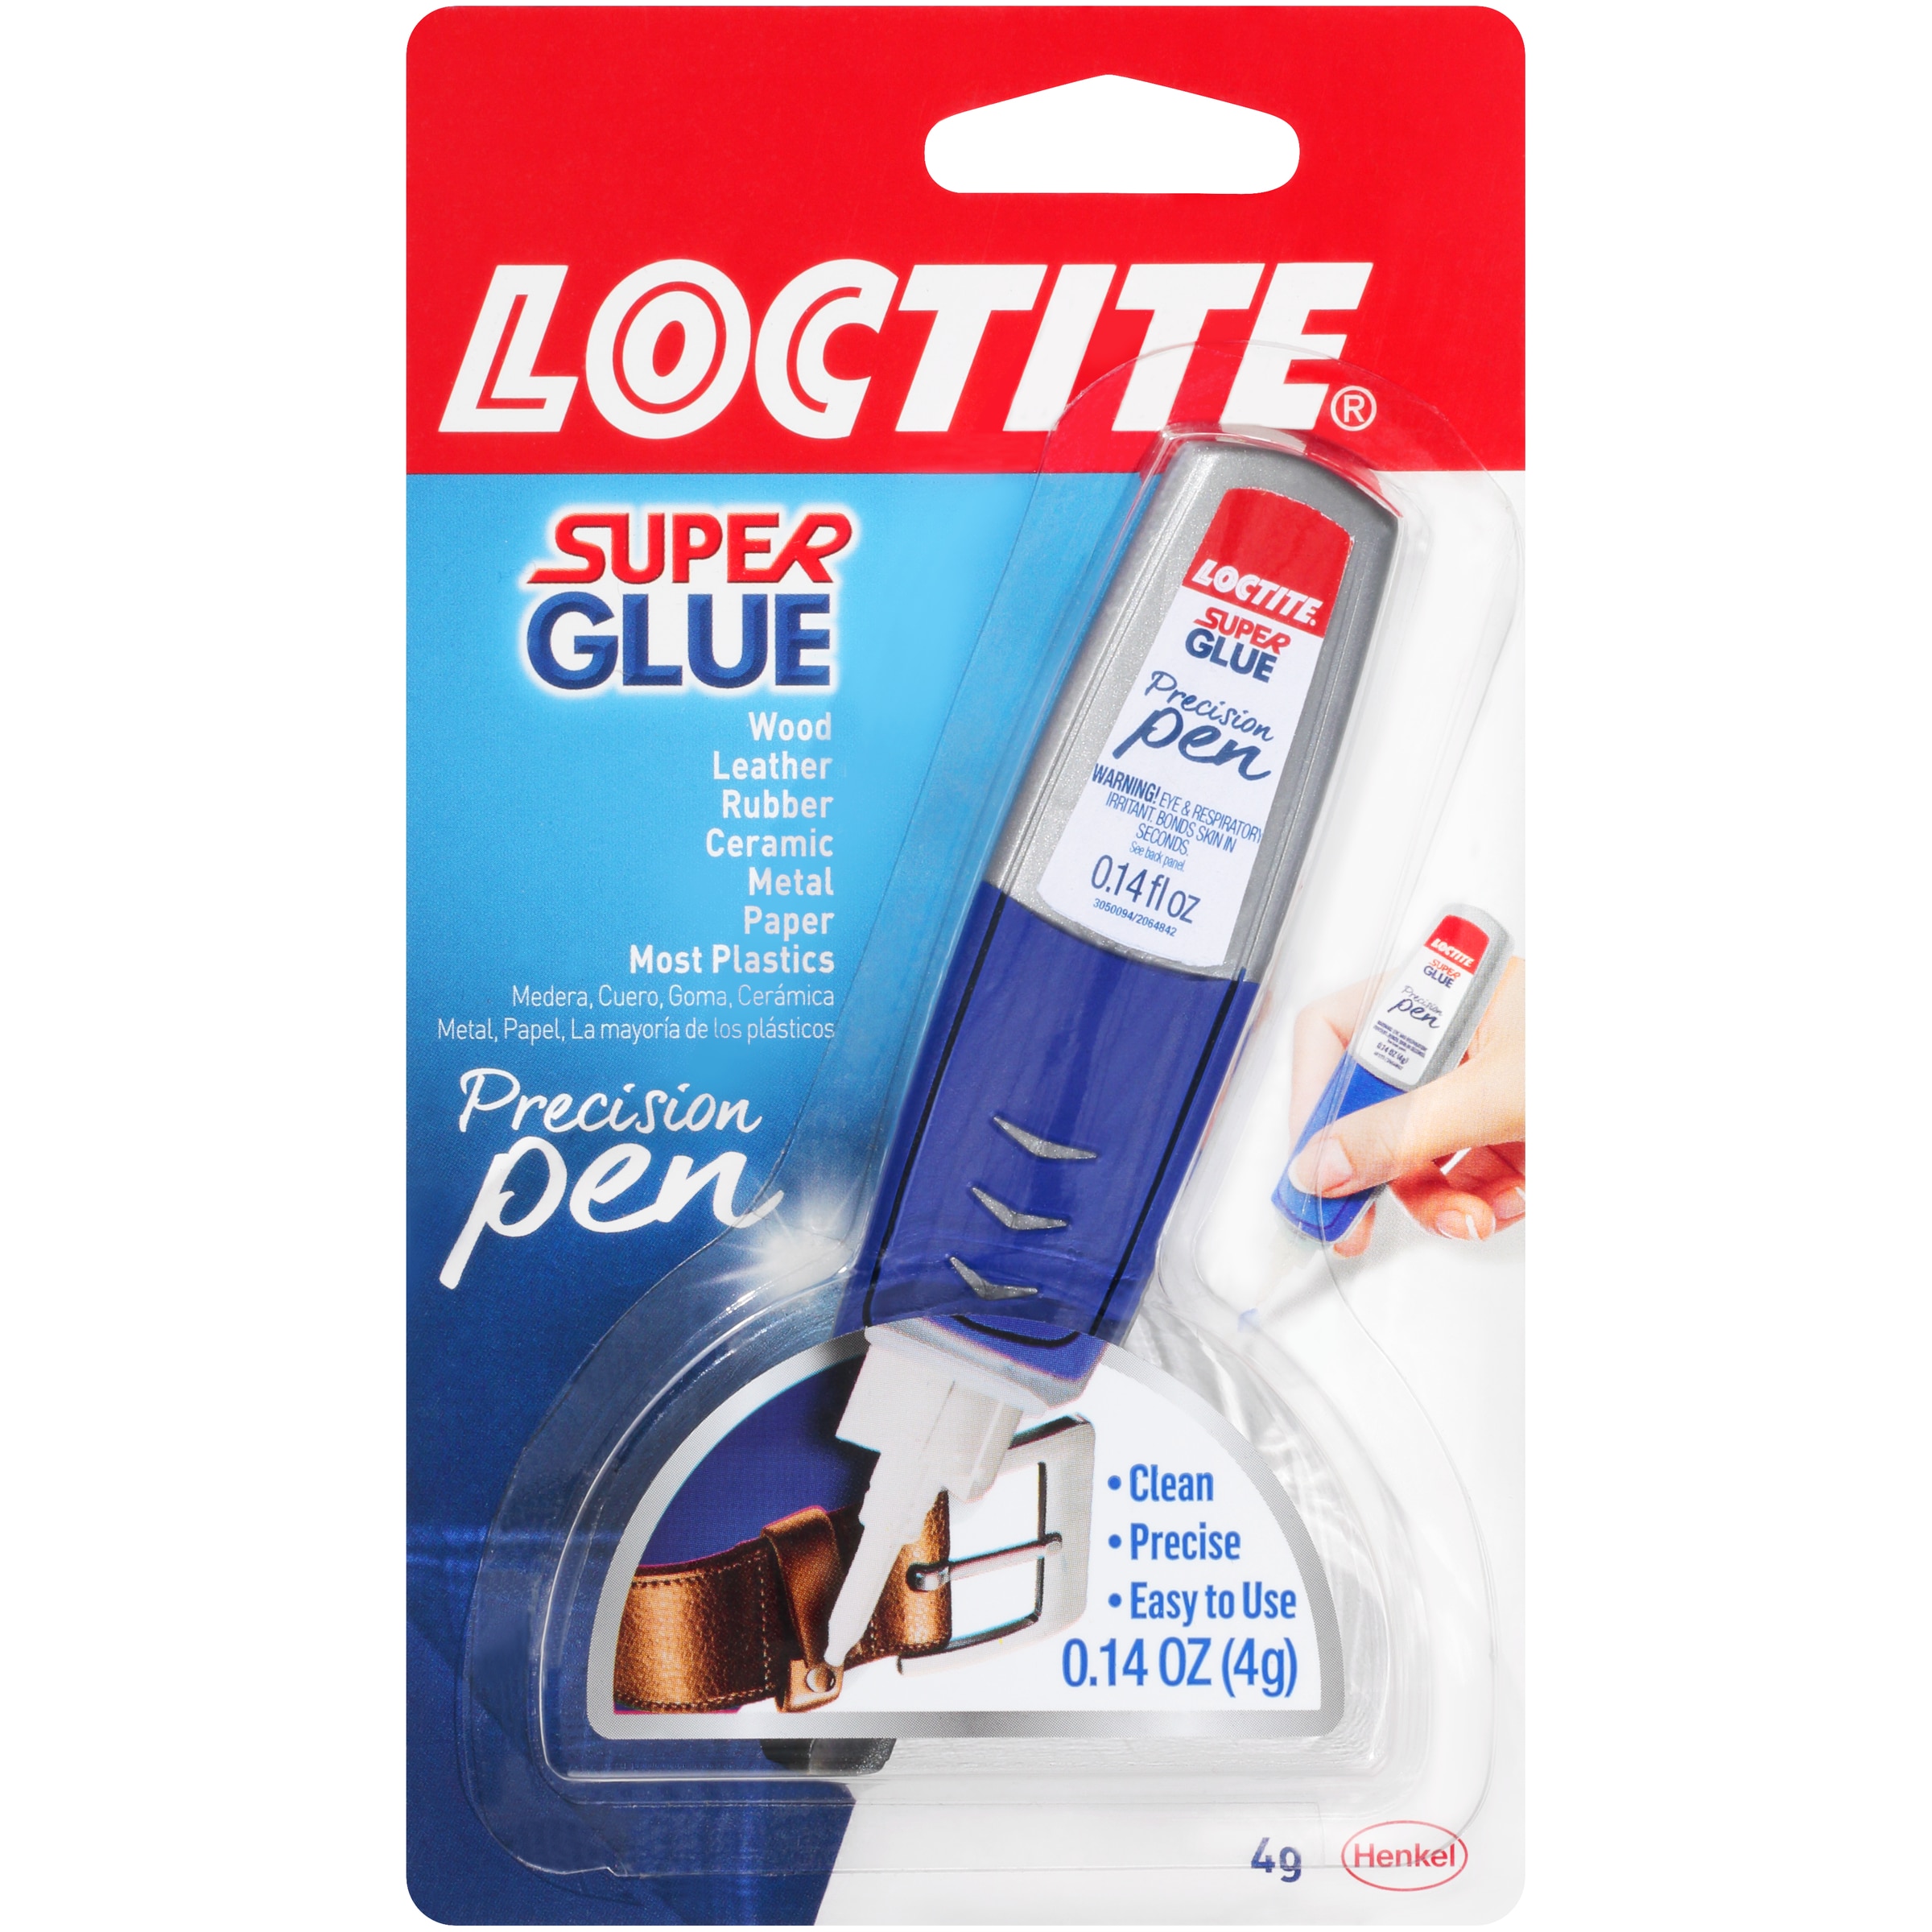 Loctite® Super Glue Gel Tube